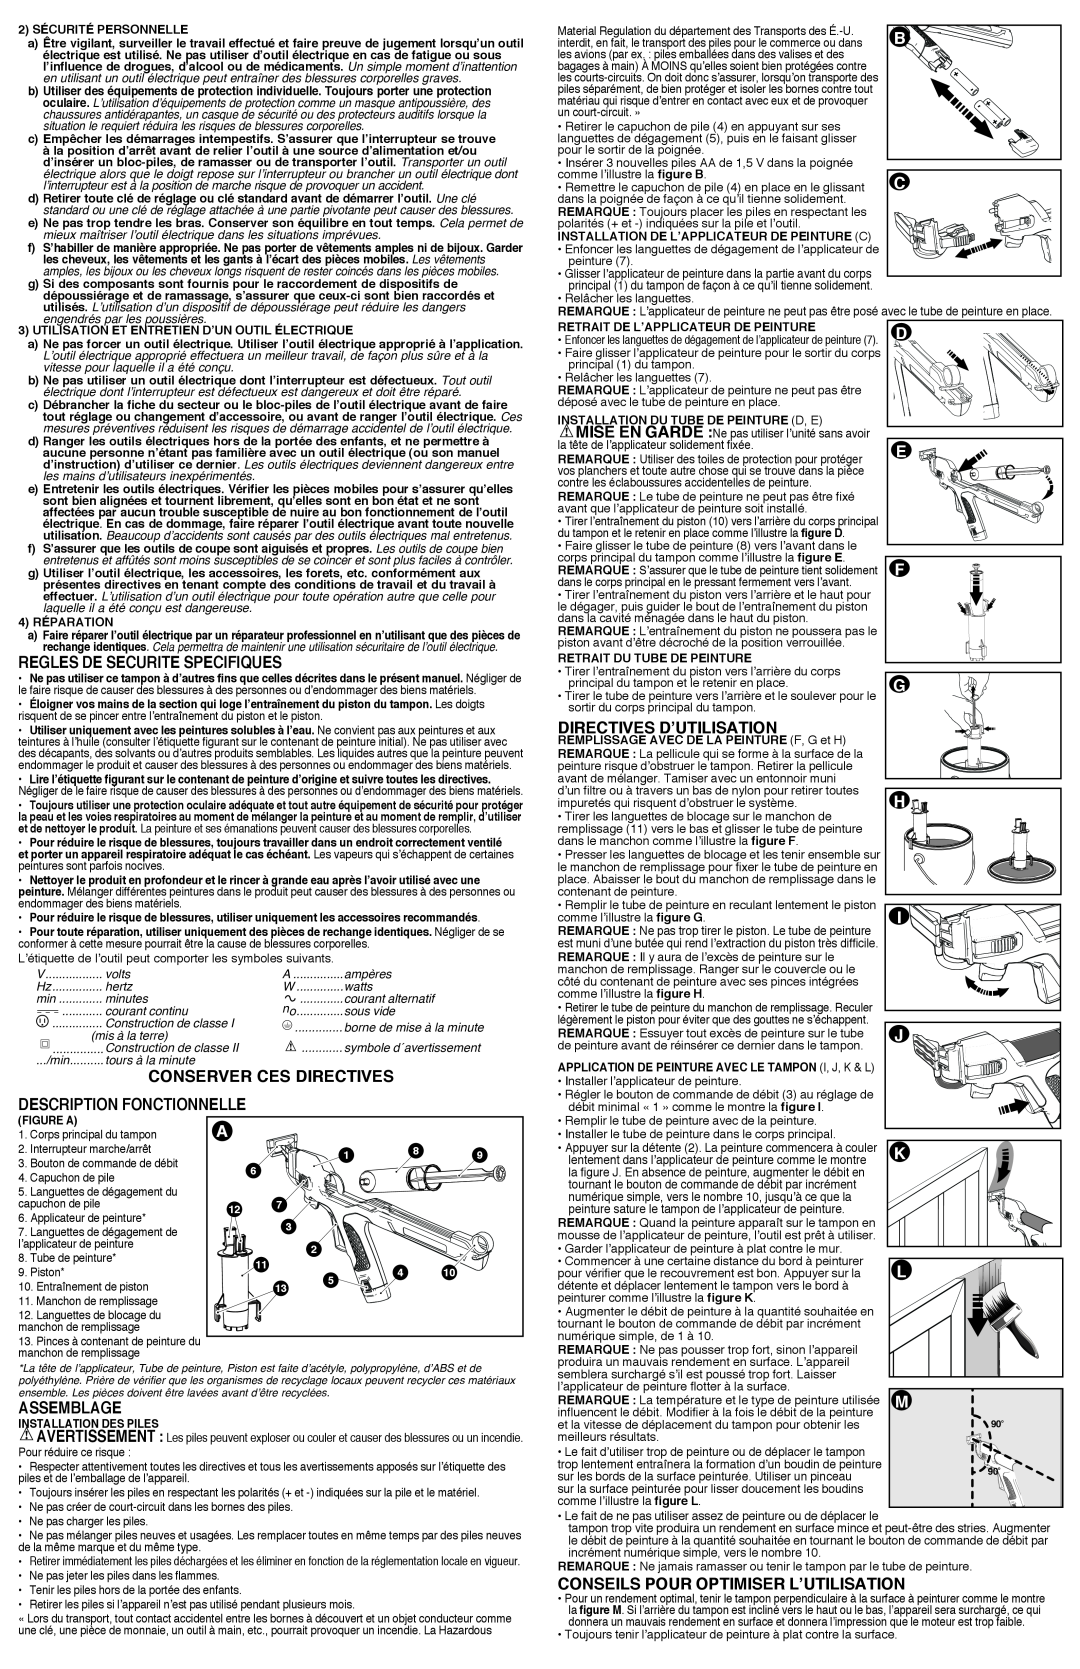 Black & Decker BDPE200B instruction manual Regles De Securite Specifiques, Assemblage, Directives D’Utilisation, Figure A 